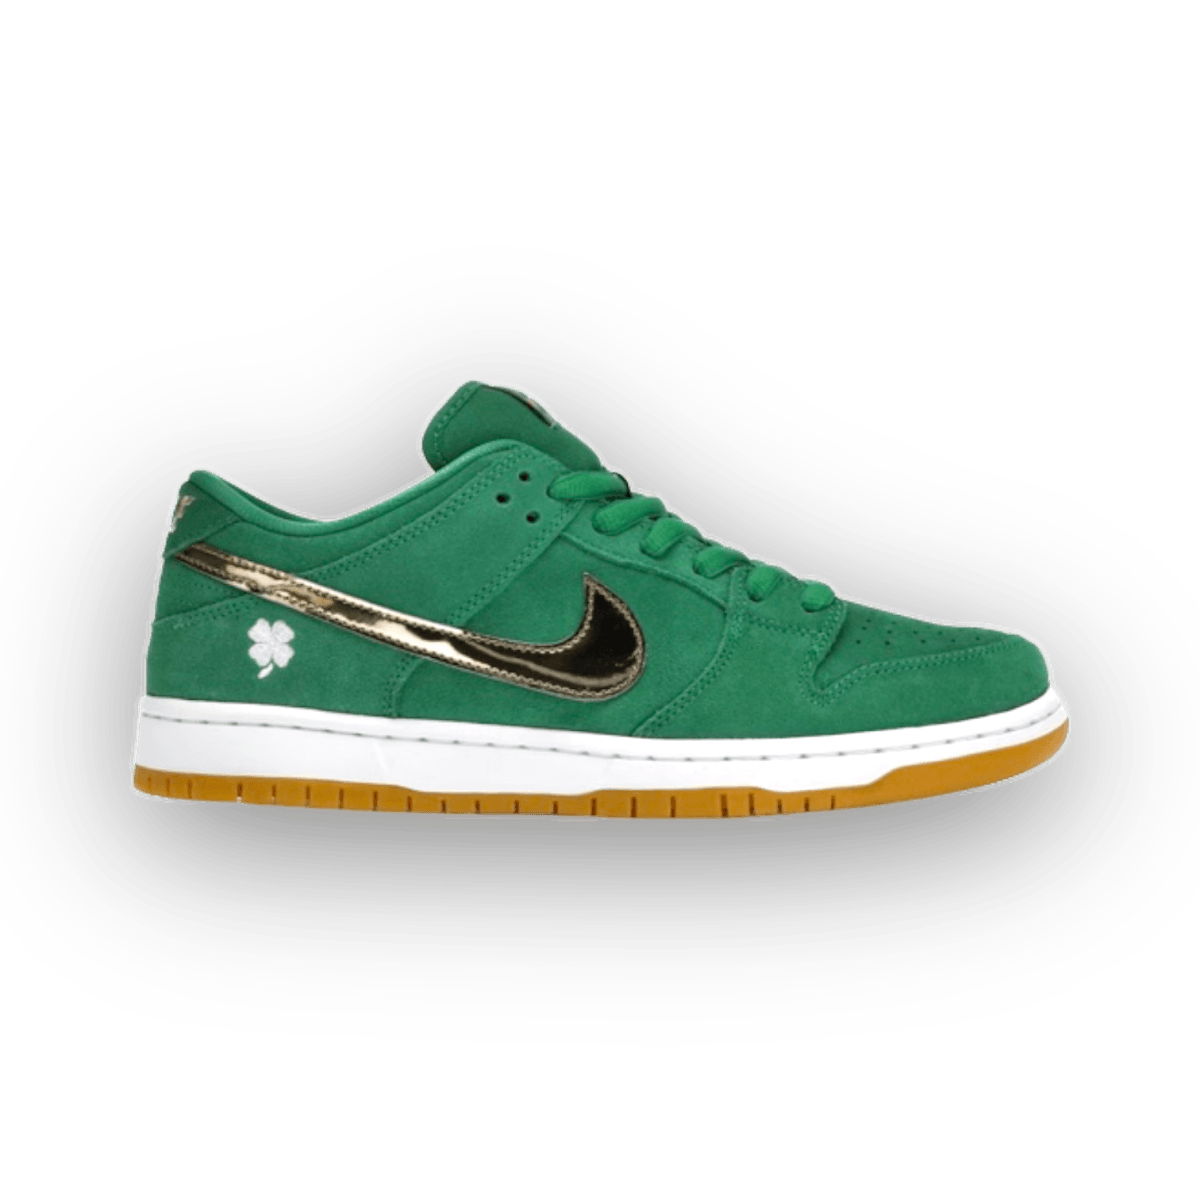 SB Dunk Low Pro St. Patrick's Day - Low Sneaker - Jawns on Fire Sneakers & Streetwear